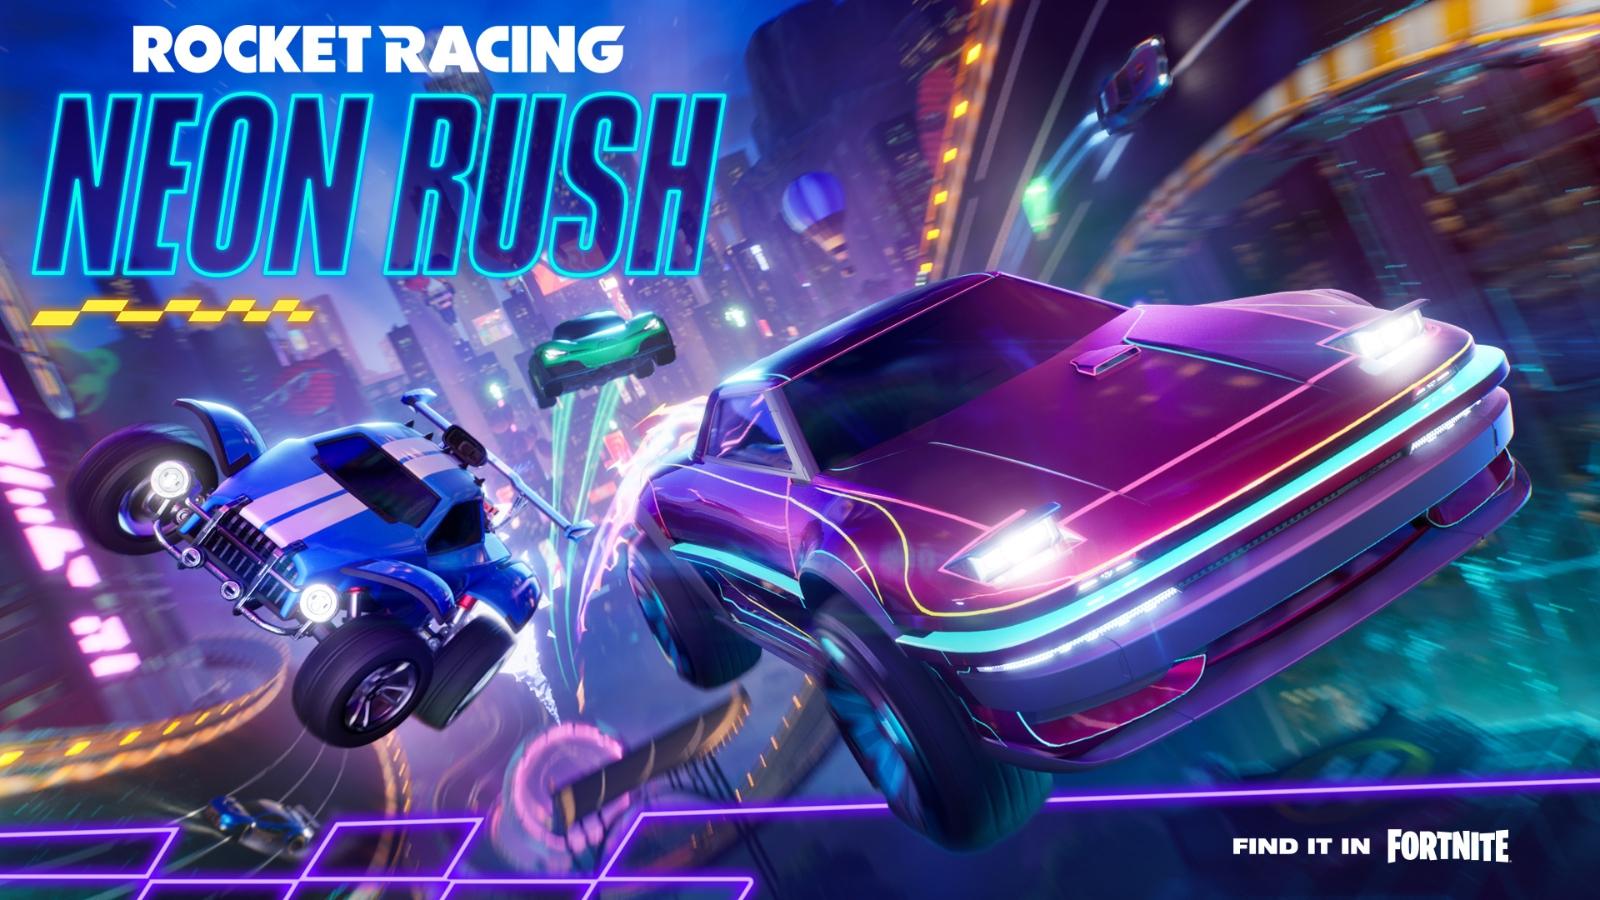 Fortnite Neon Rush Rocket Racing cover